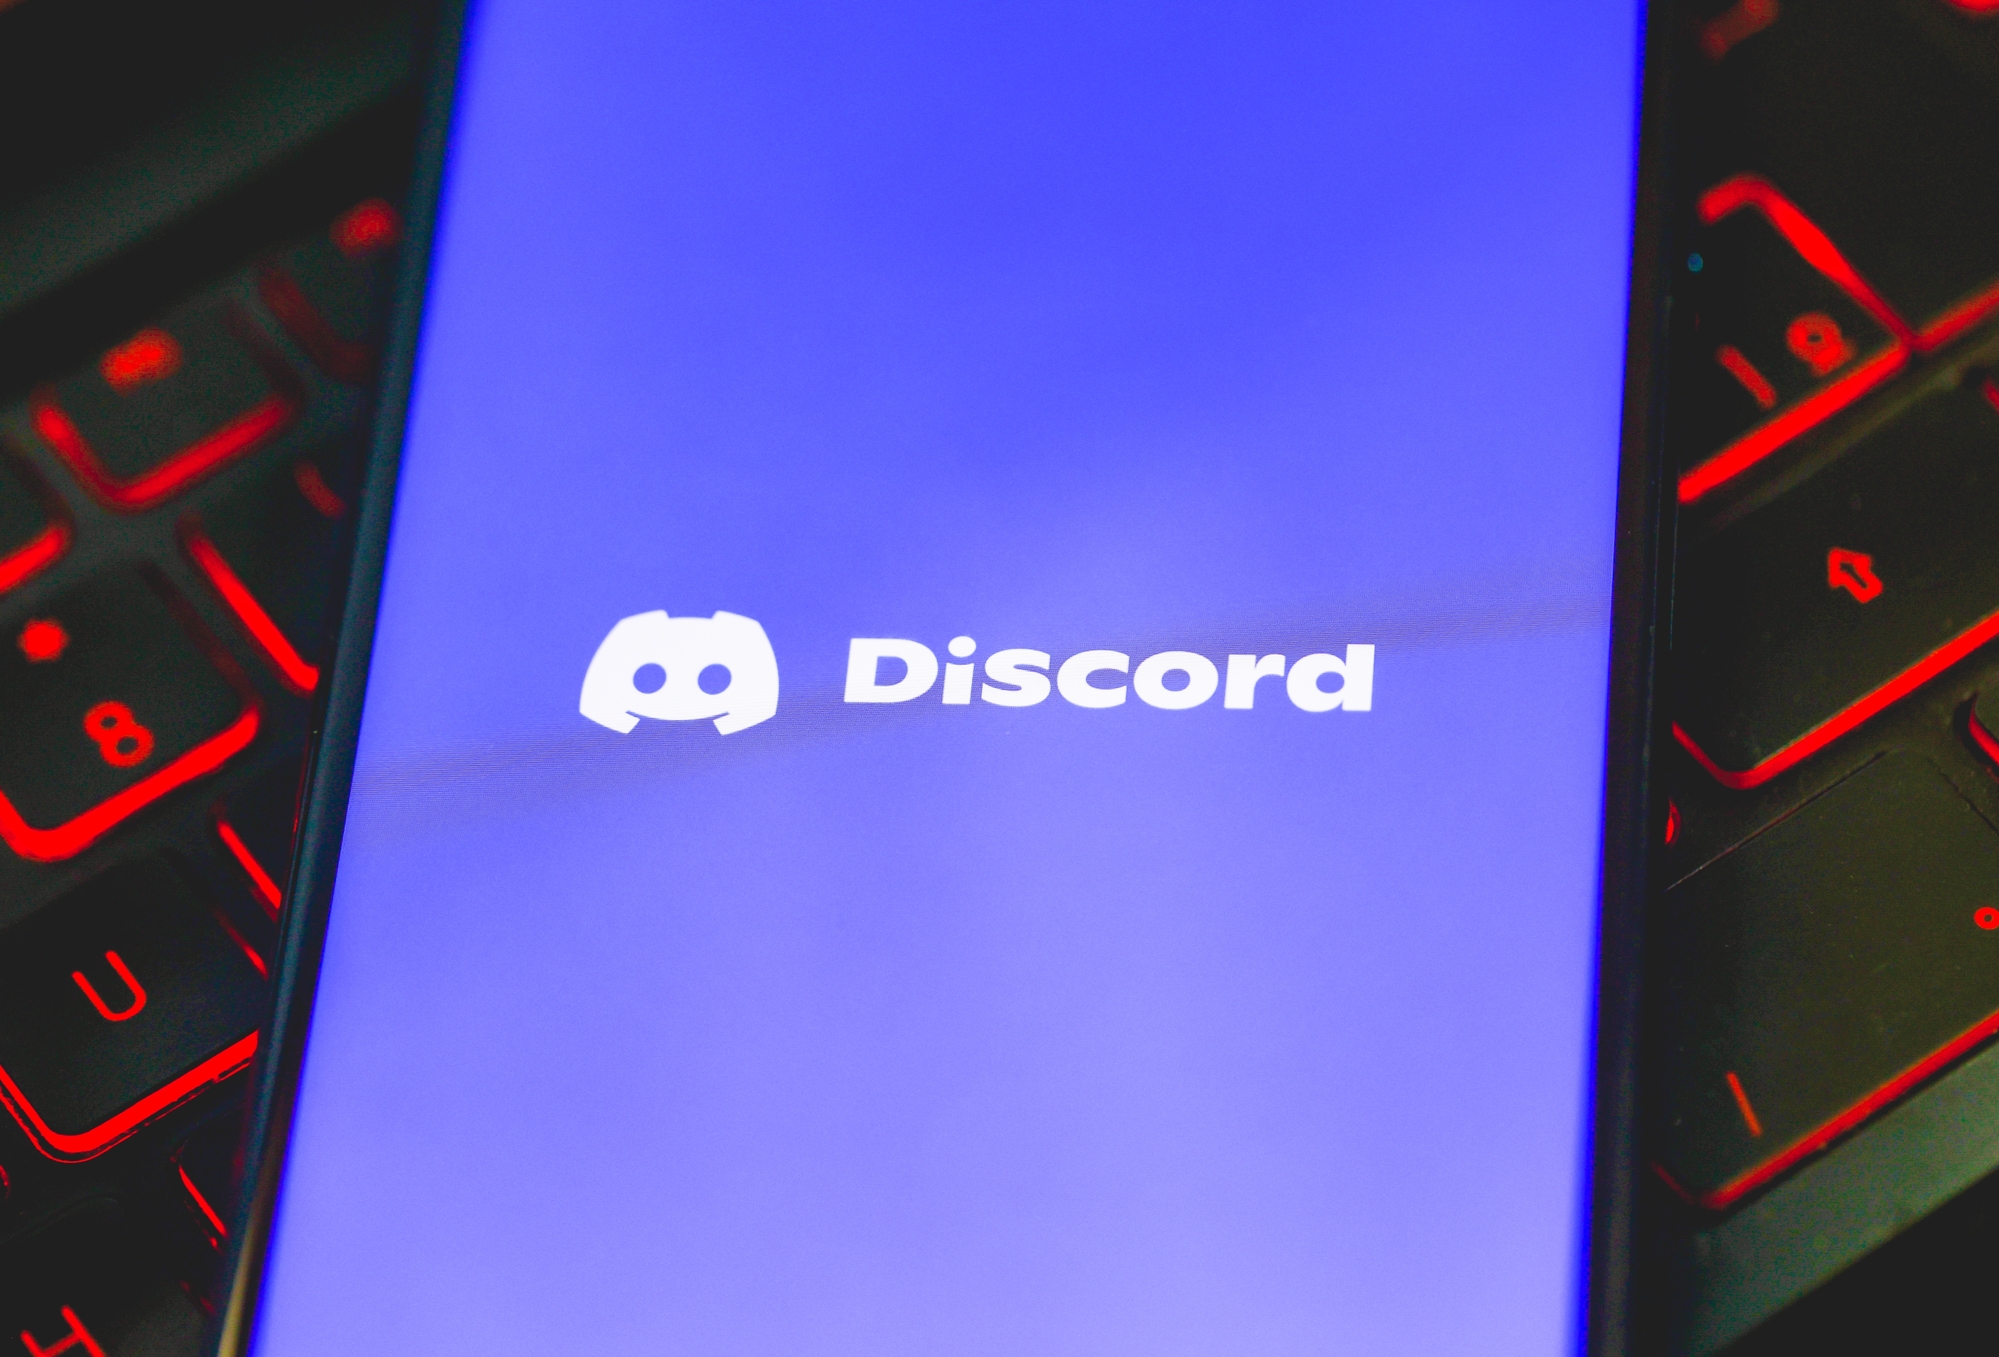 Discord offre un vrai mode sombre sur mobile... pour qui sait où chercher